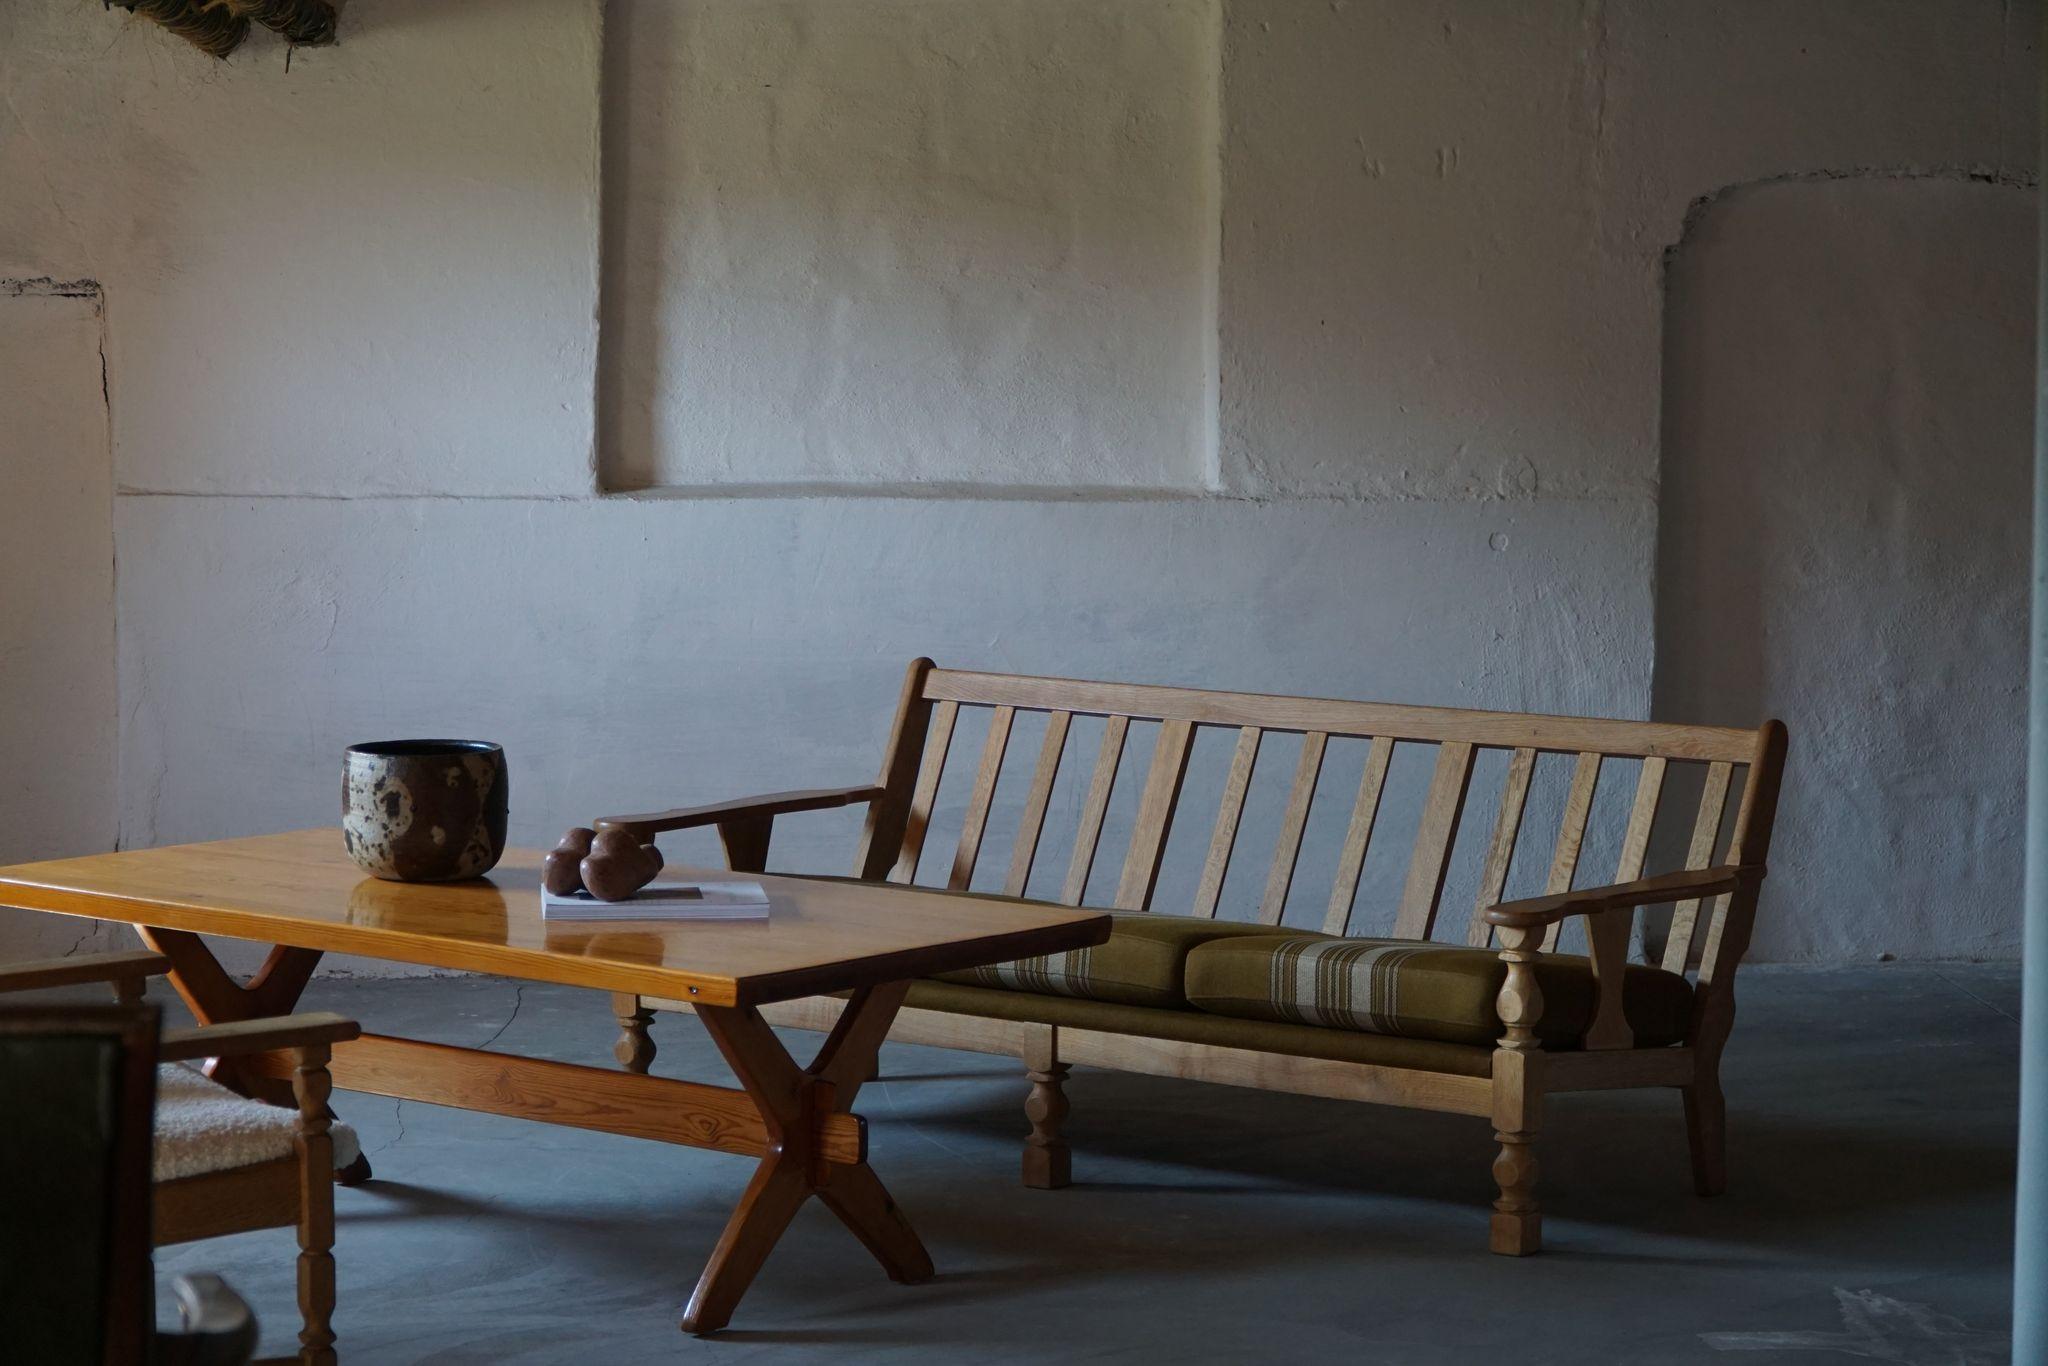 Ein seltenes skulpturales dänisches modernes Sofa im Stil von Henning Kjærnulf. Hergestellt aus Eiche und mit der originalen Savak-Wollpolsterung. Hergestellt in den 1960er Jahren von einem dänischen Möbelschreiner.
Der allgemeine Eindruck ist gut.